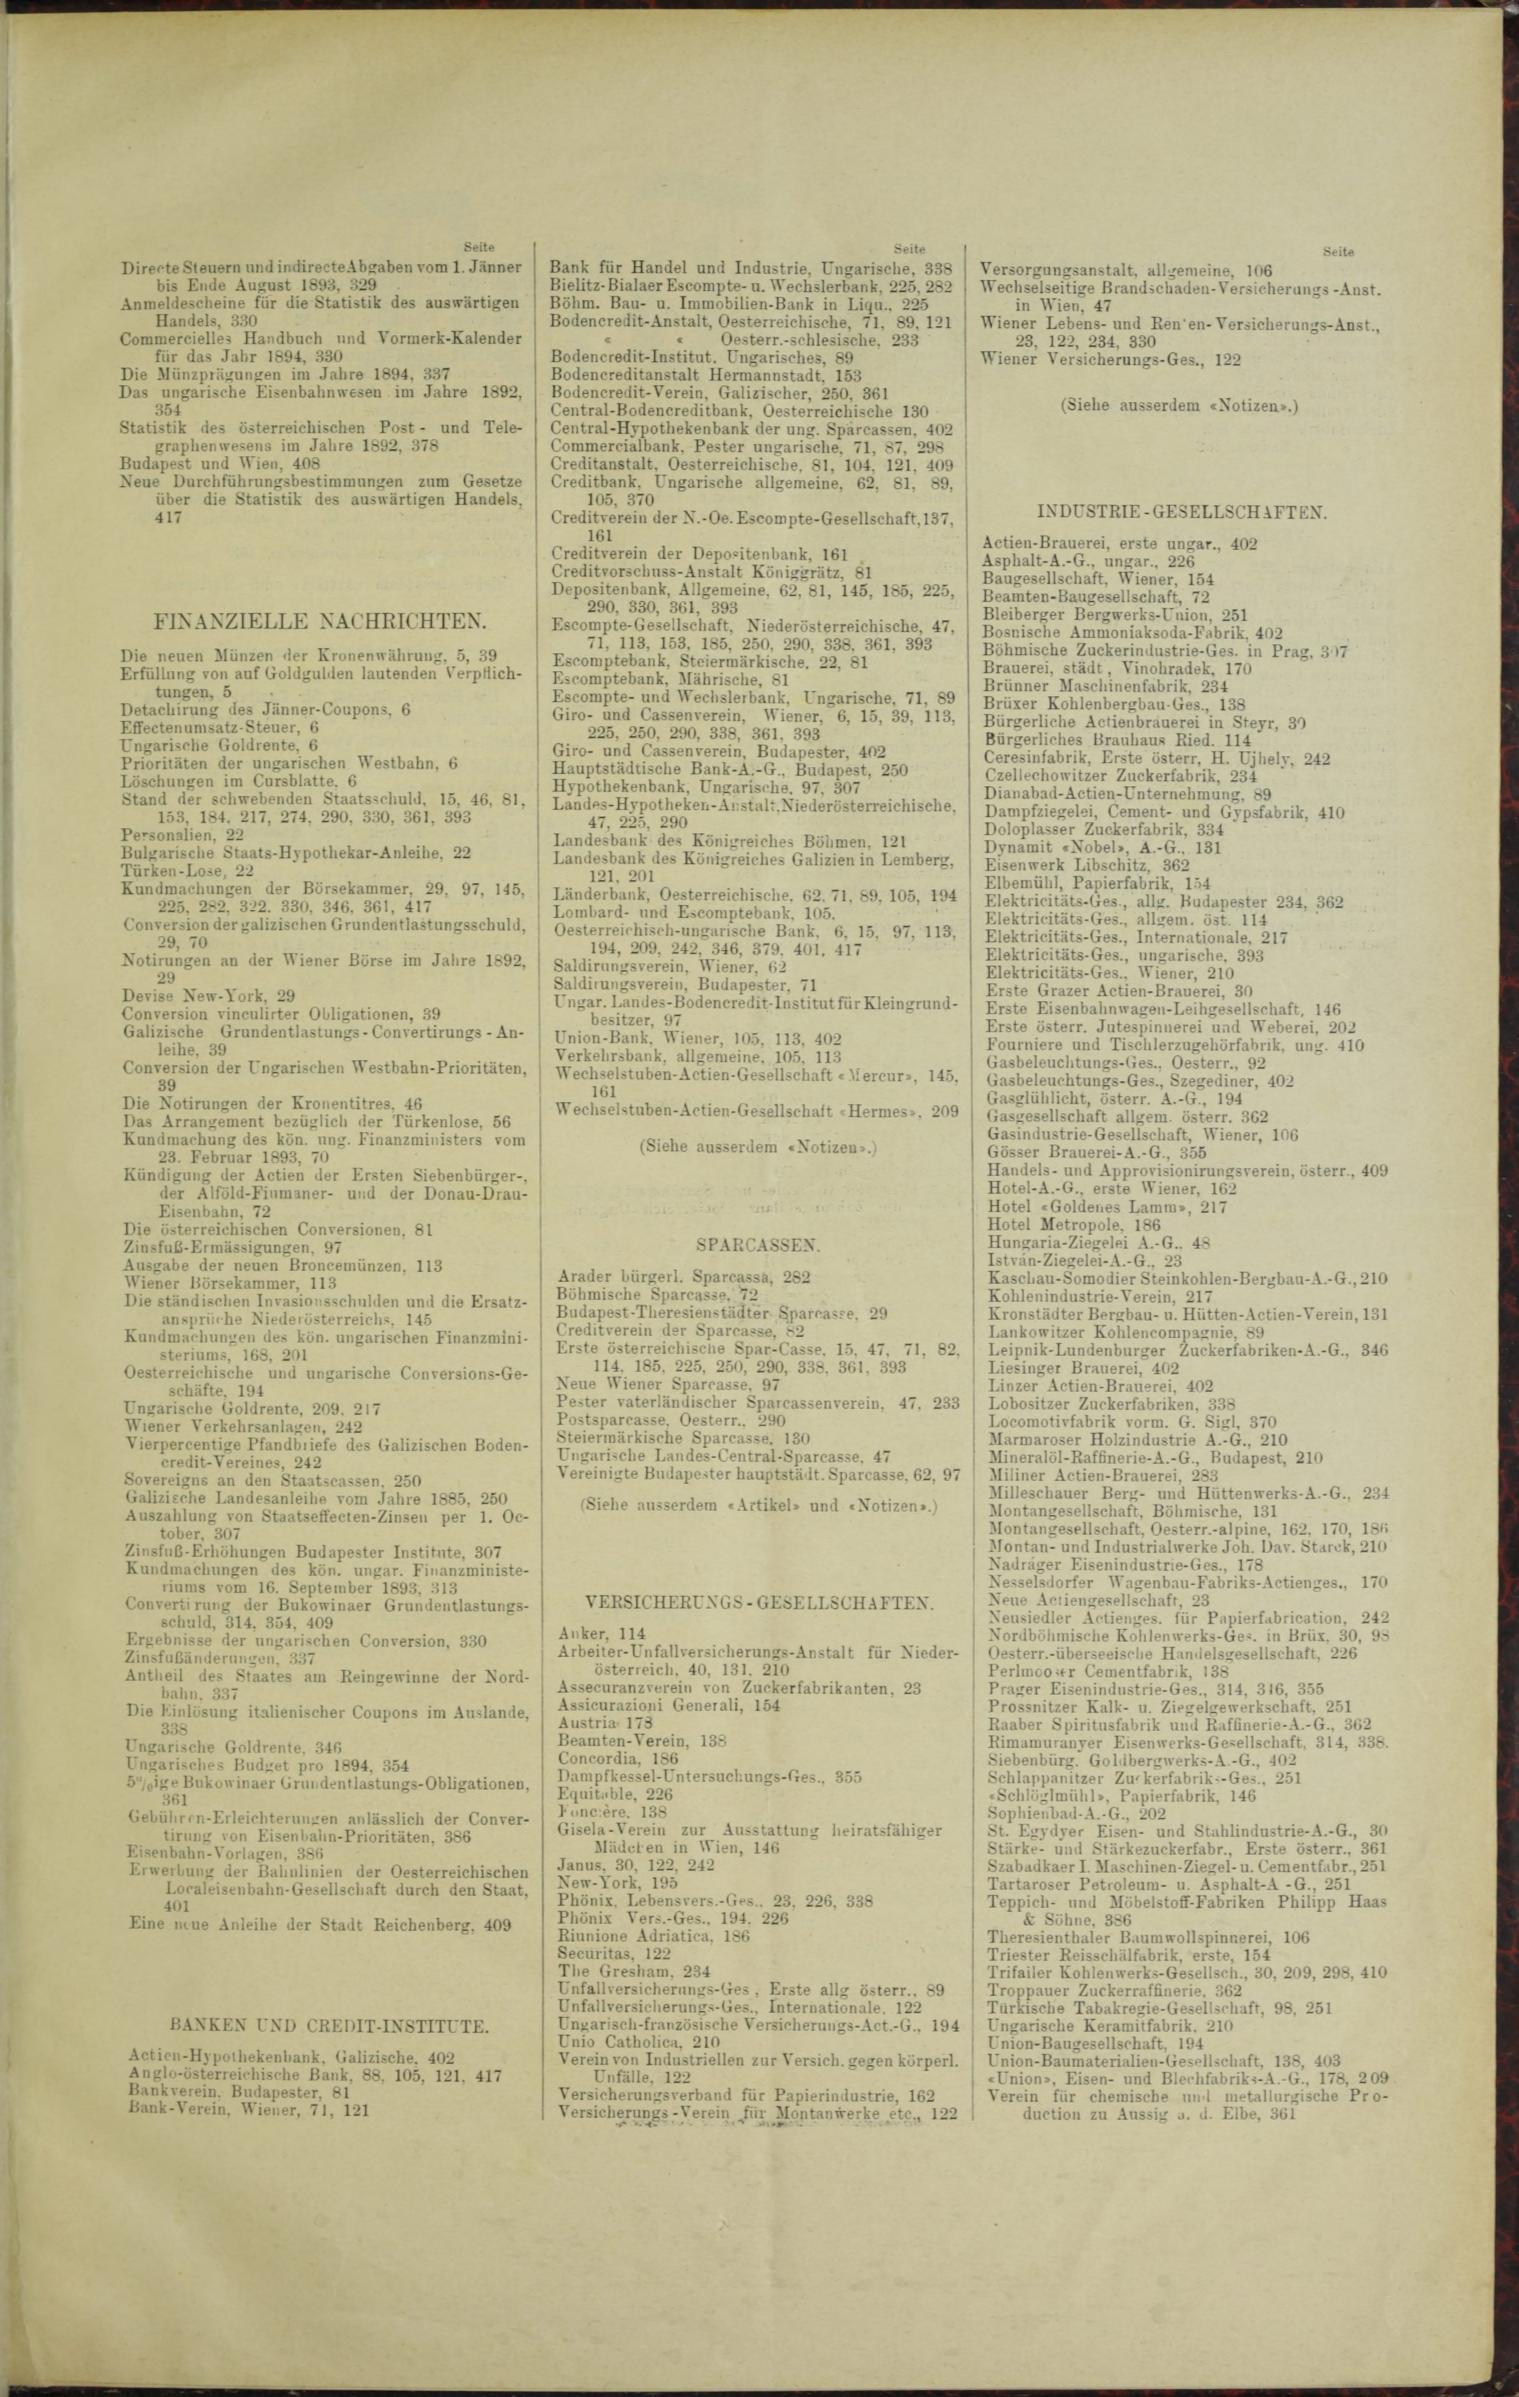 Der Tresor 04.05.1893 - Seite 11